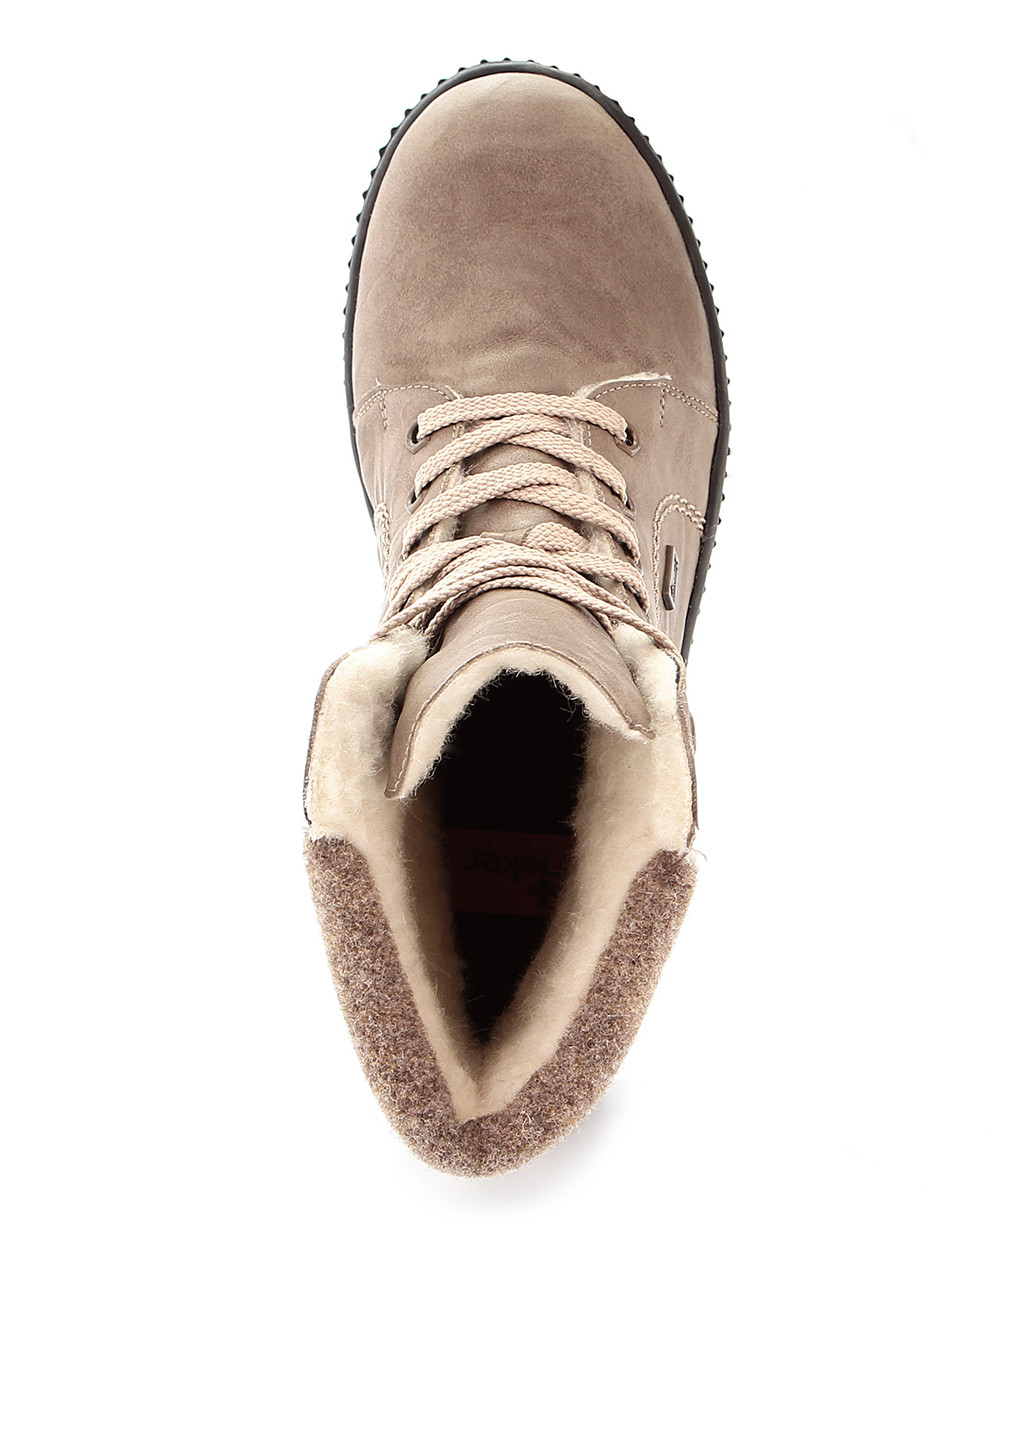 Зимние ботинки берцы Rieker без декора из искусственной кожи